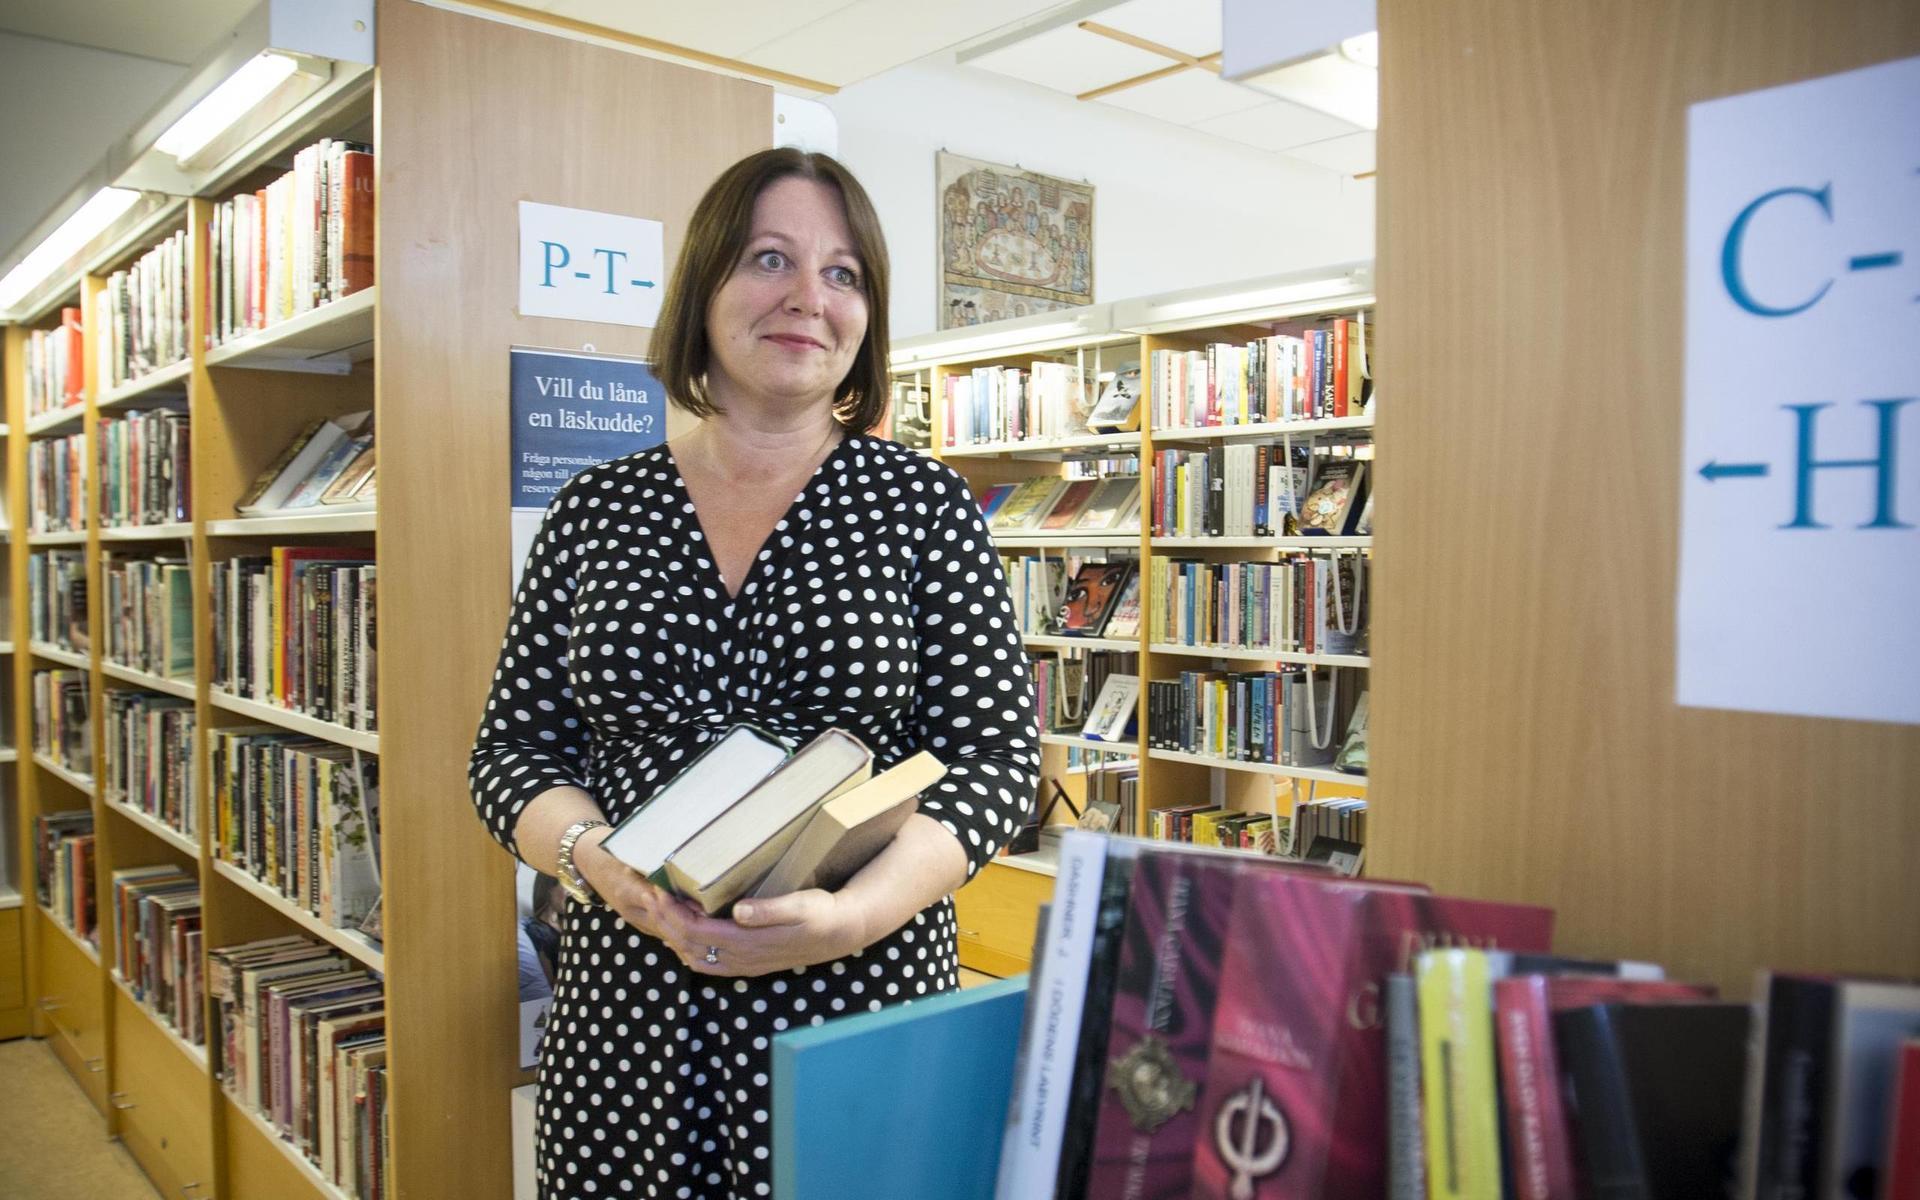 ”Har de inte varit här tidigare får vi möjligheten att berätta vad vi mer kan erbjuda”, säger bibliotekschefen Marie Erge, om de nya låntagarna som nu väntas till stadsbiblioteket i Laholm.